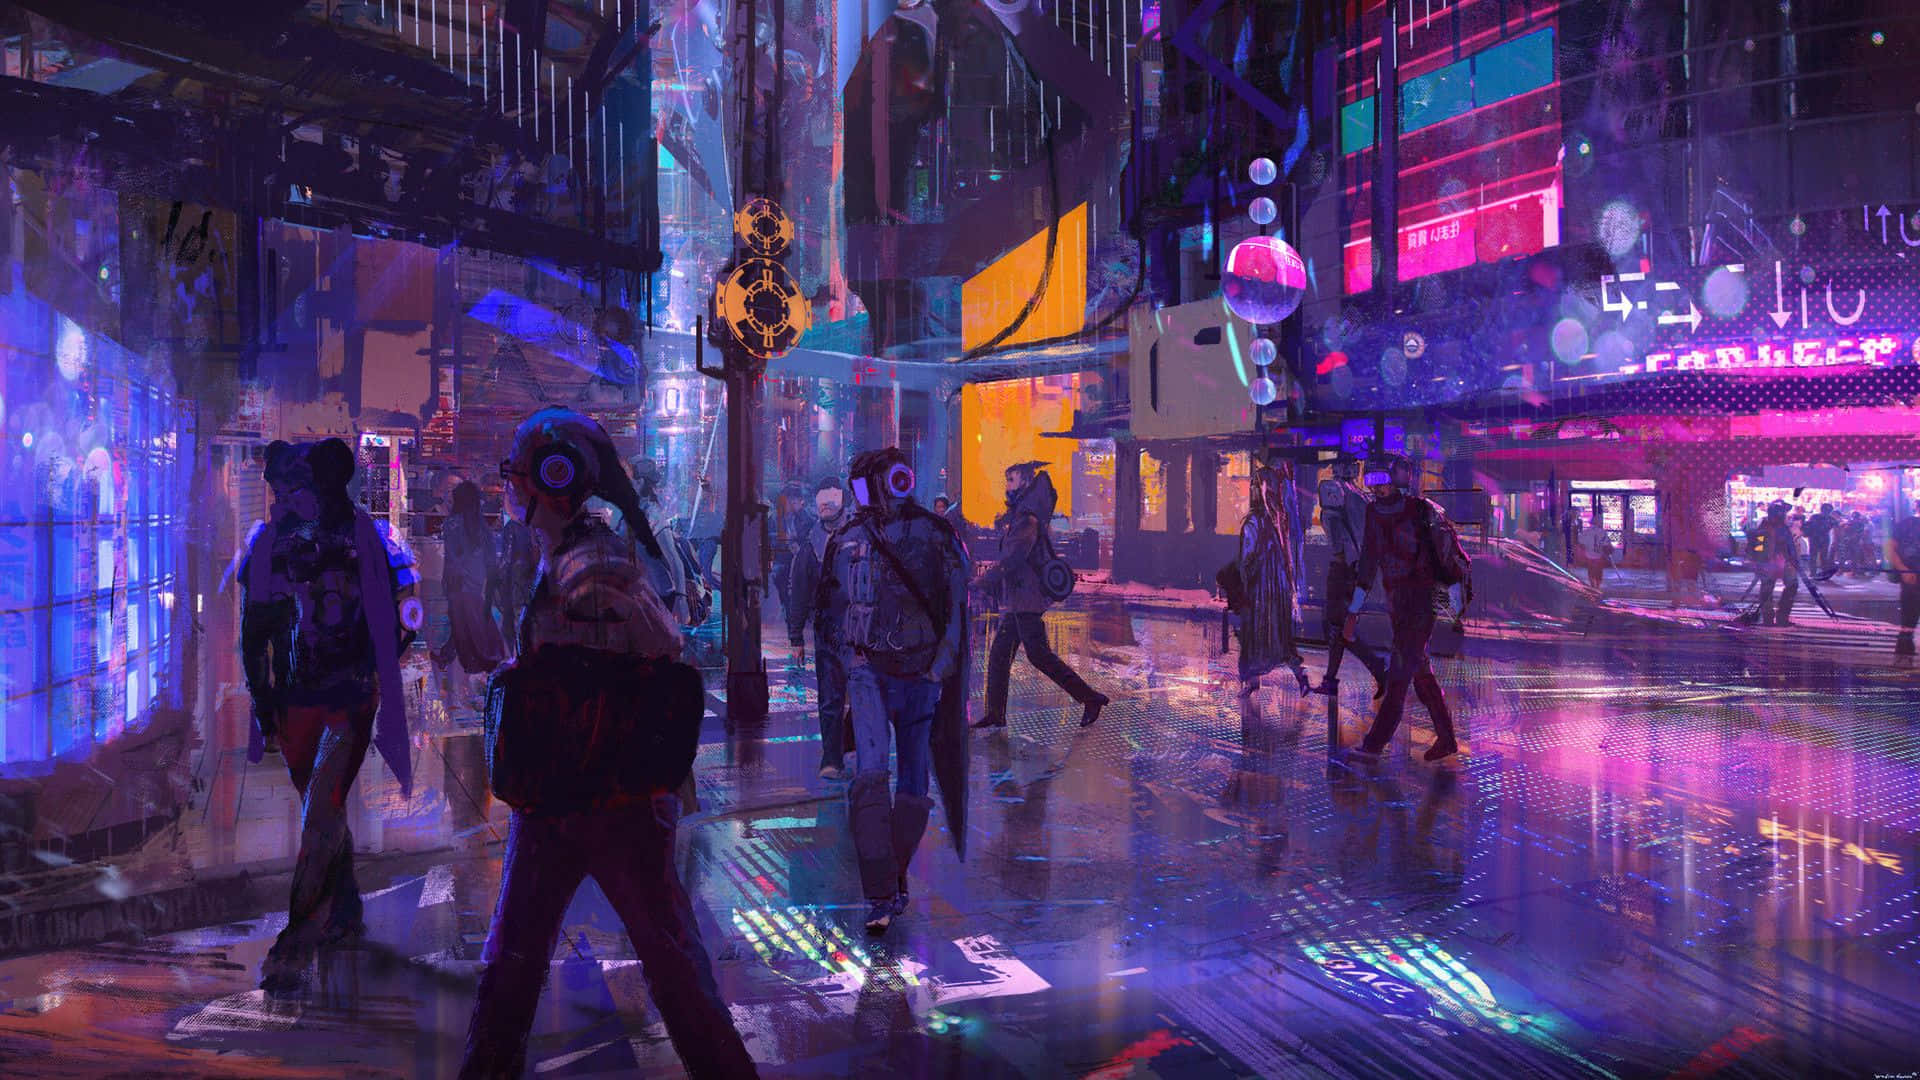 High tech digital future - Cyberpunk Aesthetic Wallpaper